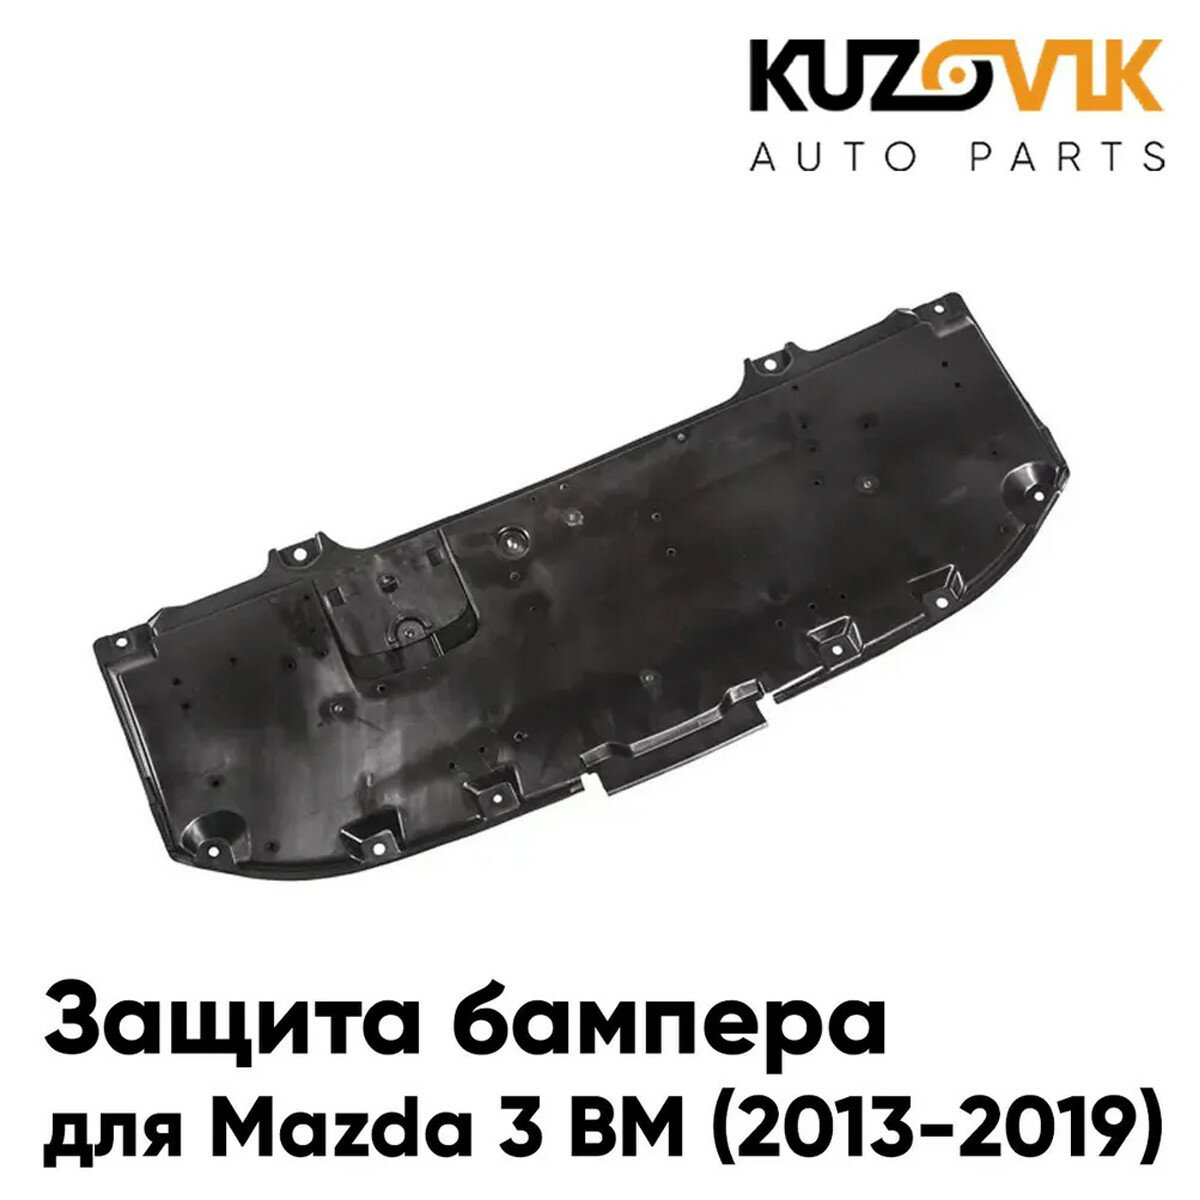 Пыльник защита бампера Mazda 3 BM (2013-2019) нижний центральный пластиковый